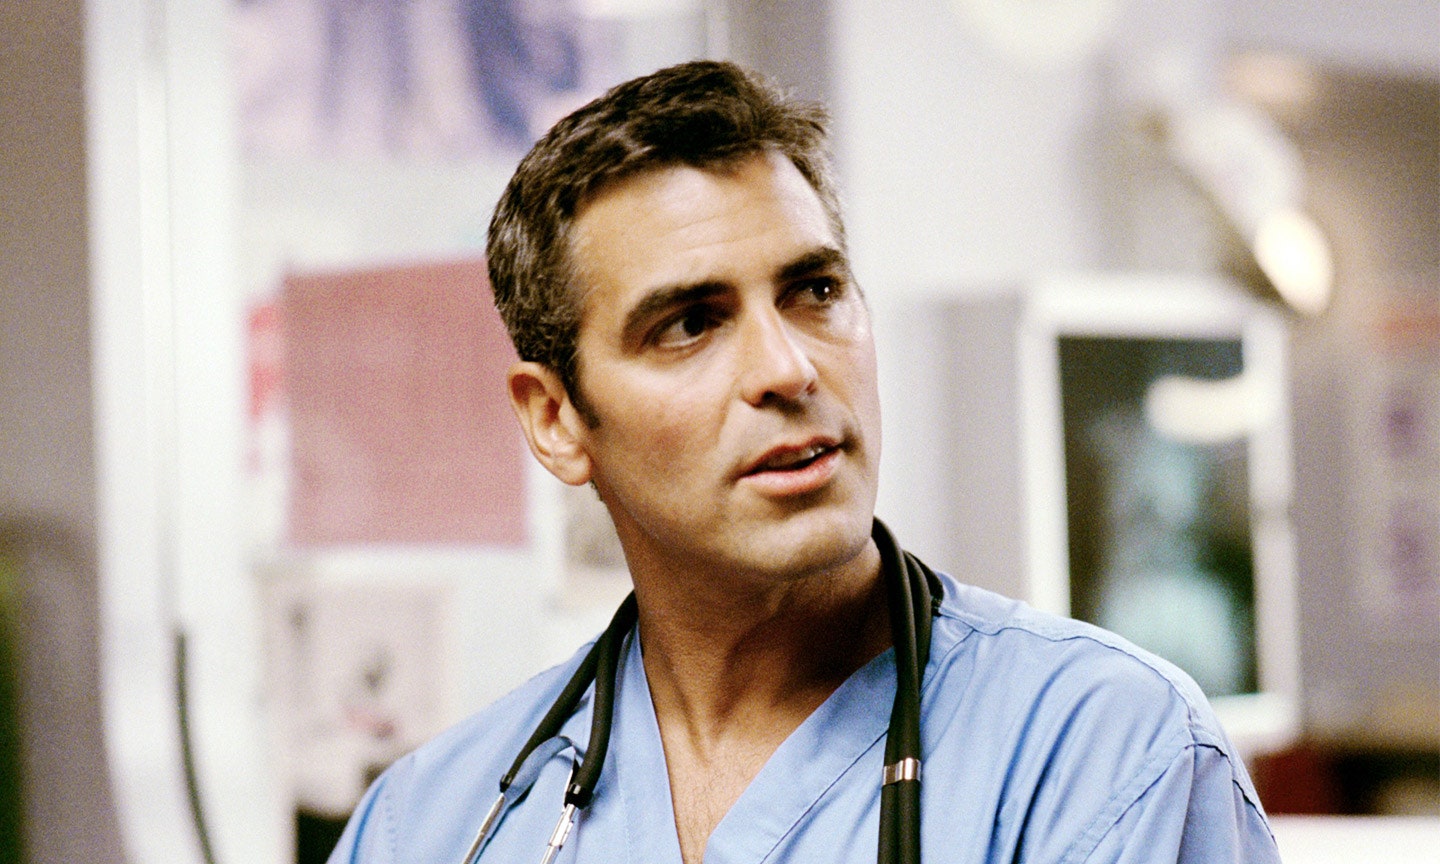 11 doctores televisivos de todos los tiempos (y los más guapos)